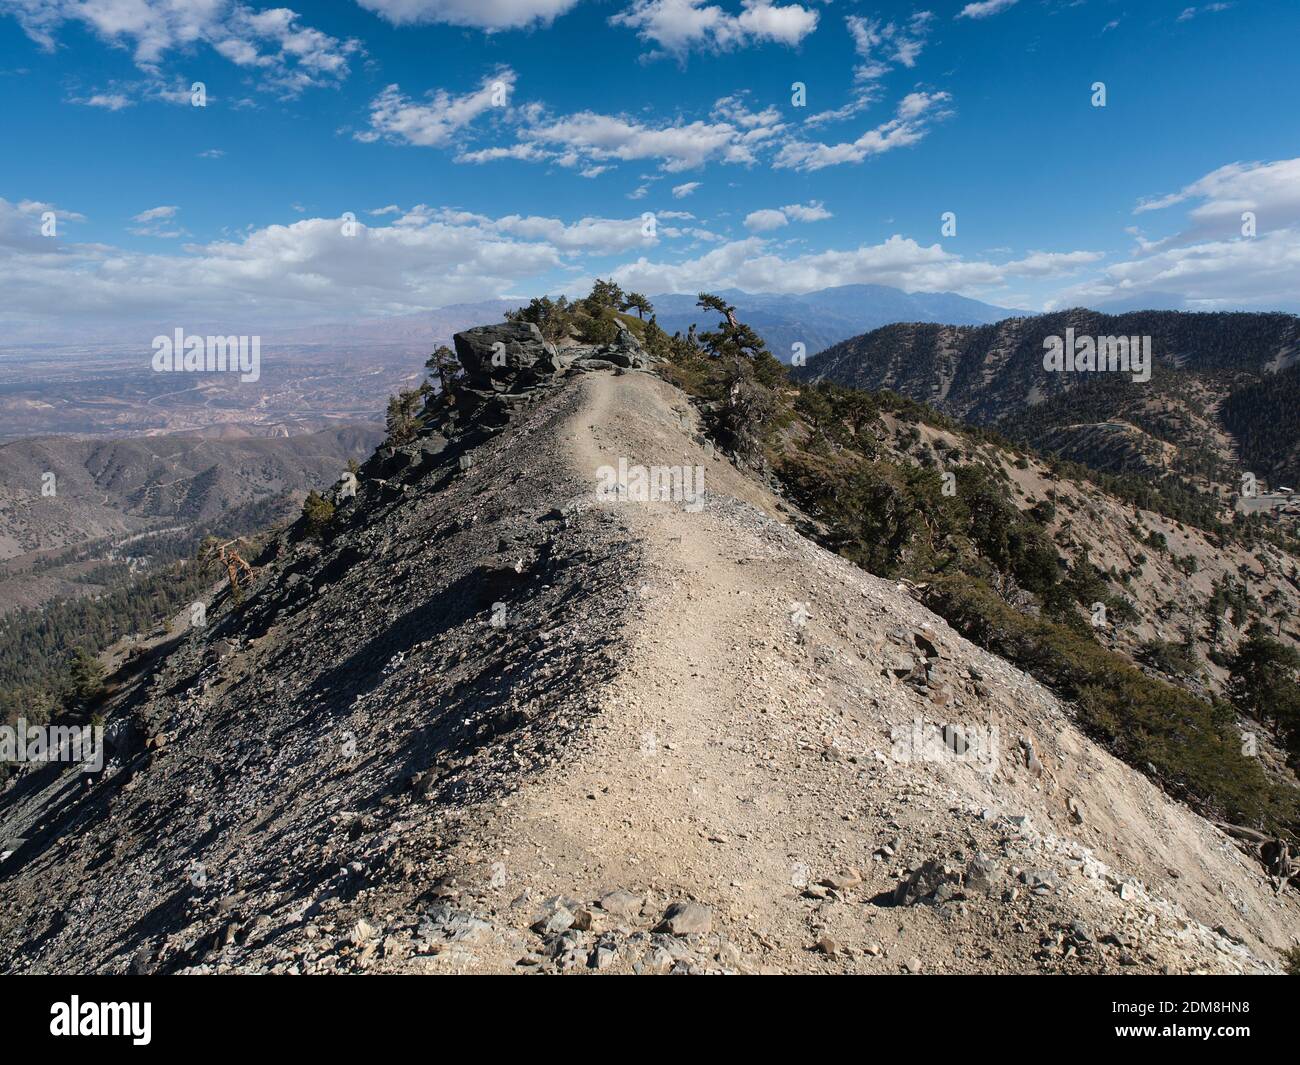 Sentier de la dorsale Devils avec ciel partiellement nuageux sur le mont Baldy près de Los Angeles Californie. Banque D'Images